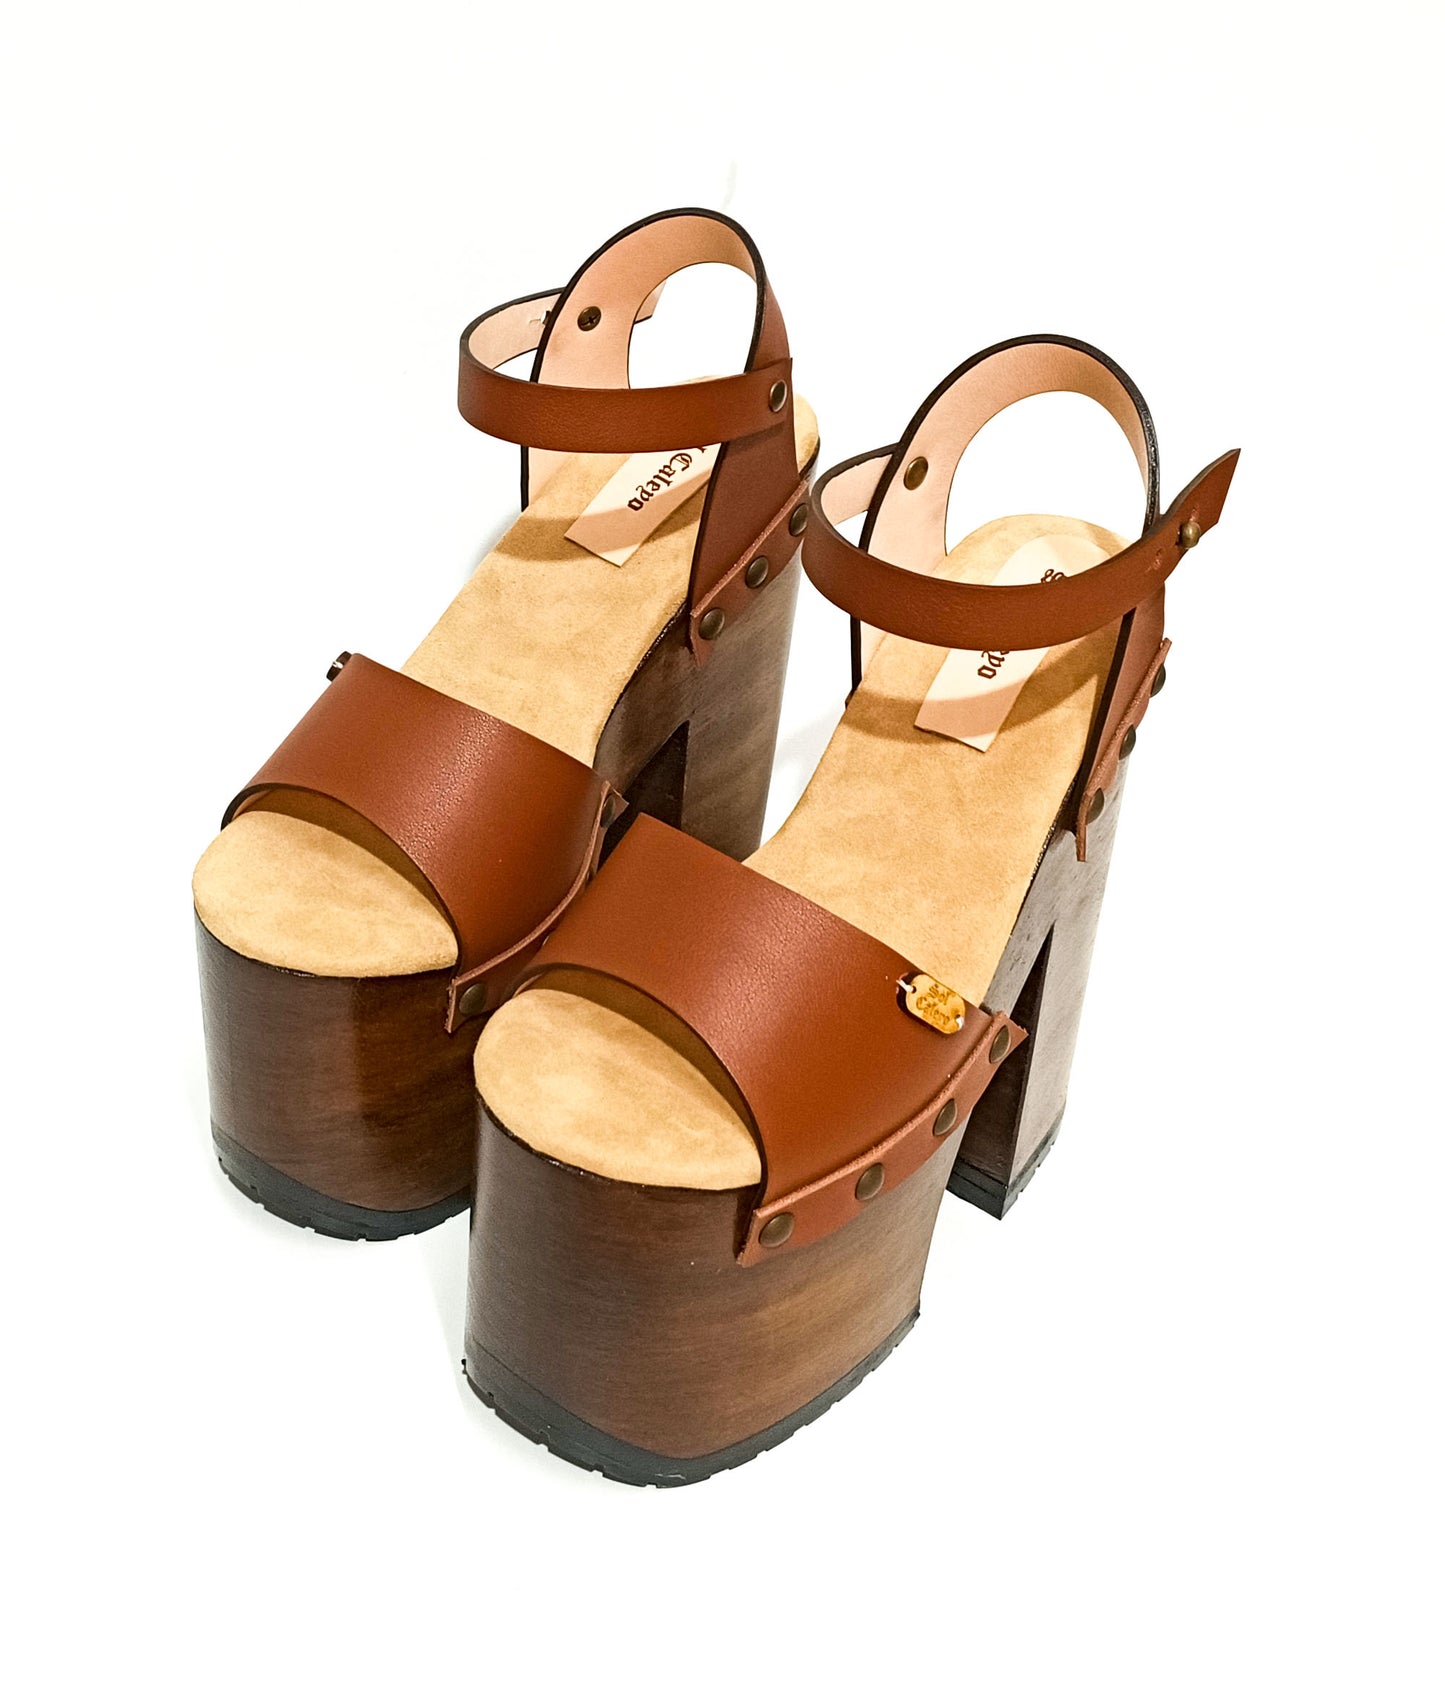 Crazy Brown Sandals